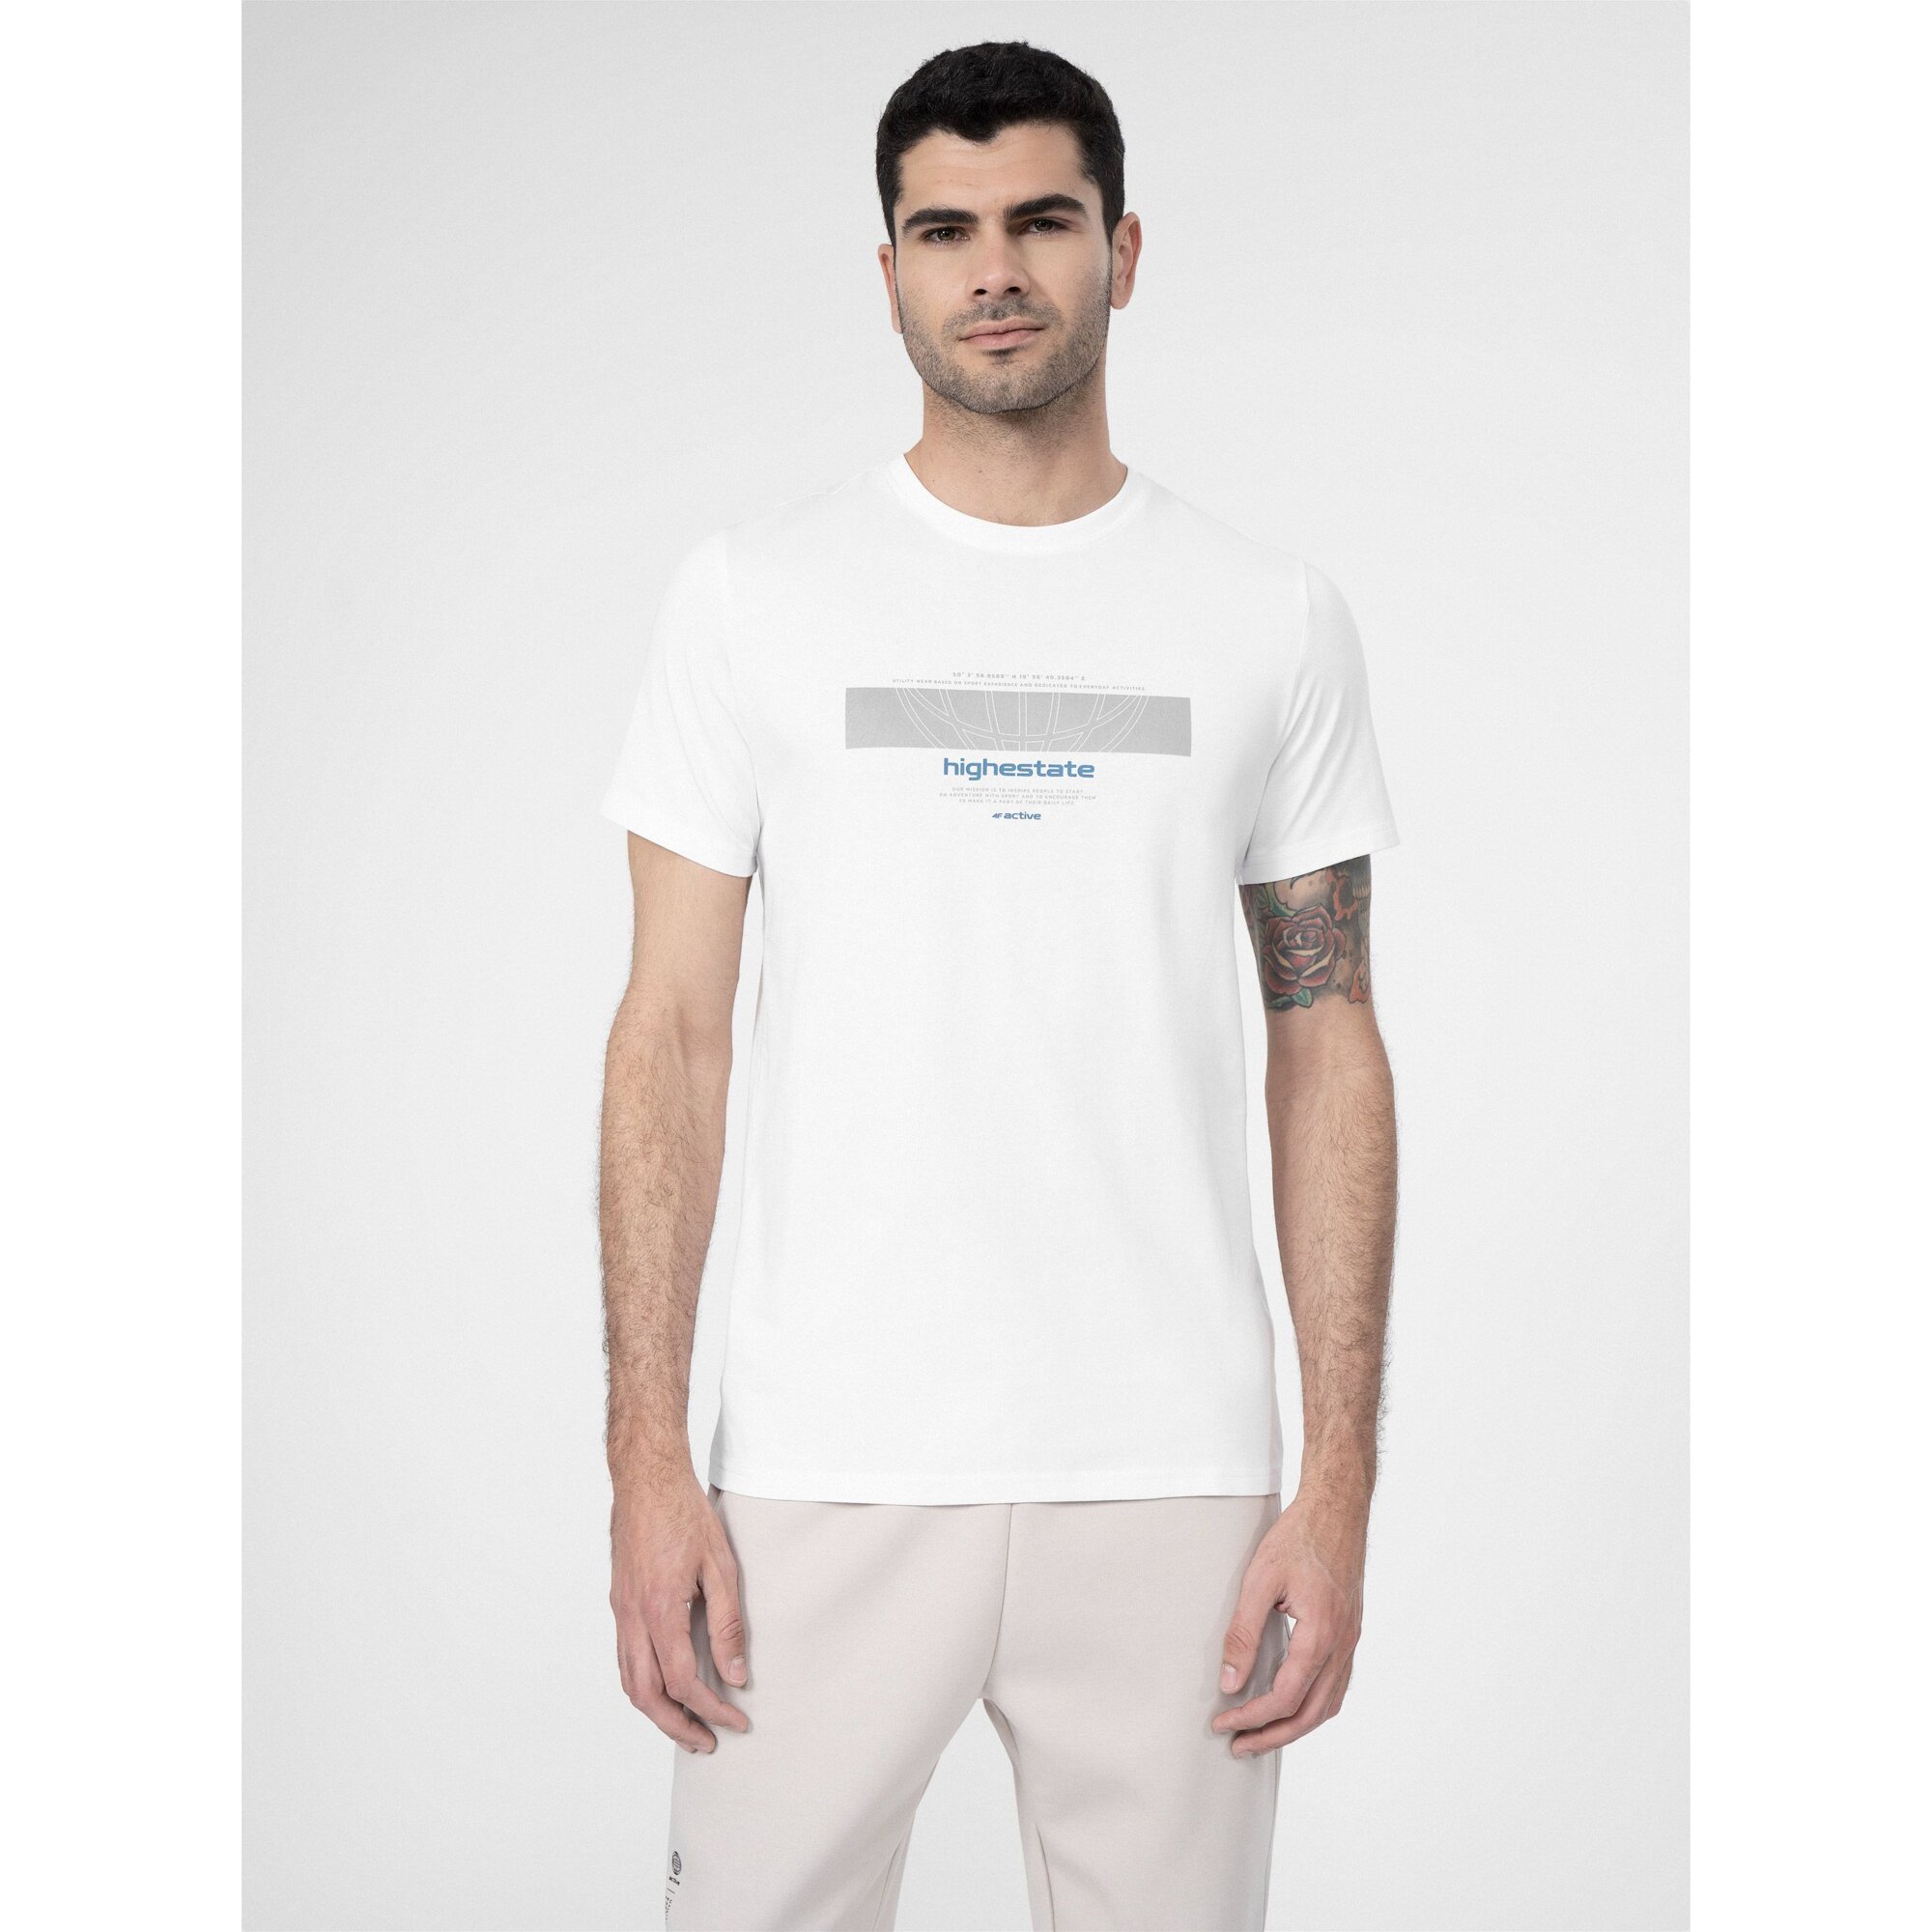 Men's cotton T-shirt 4F